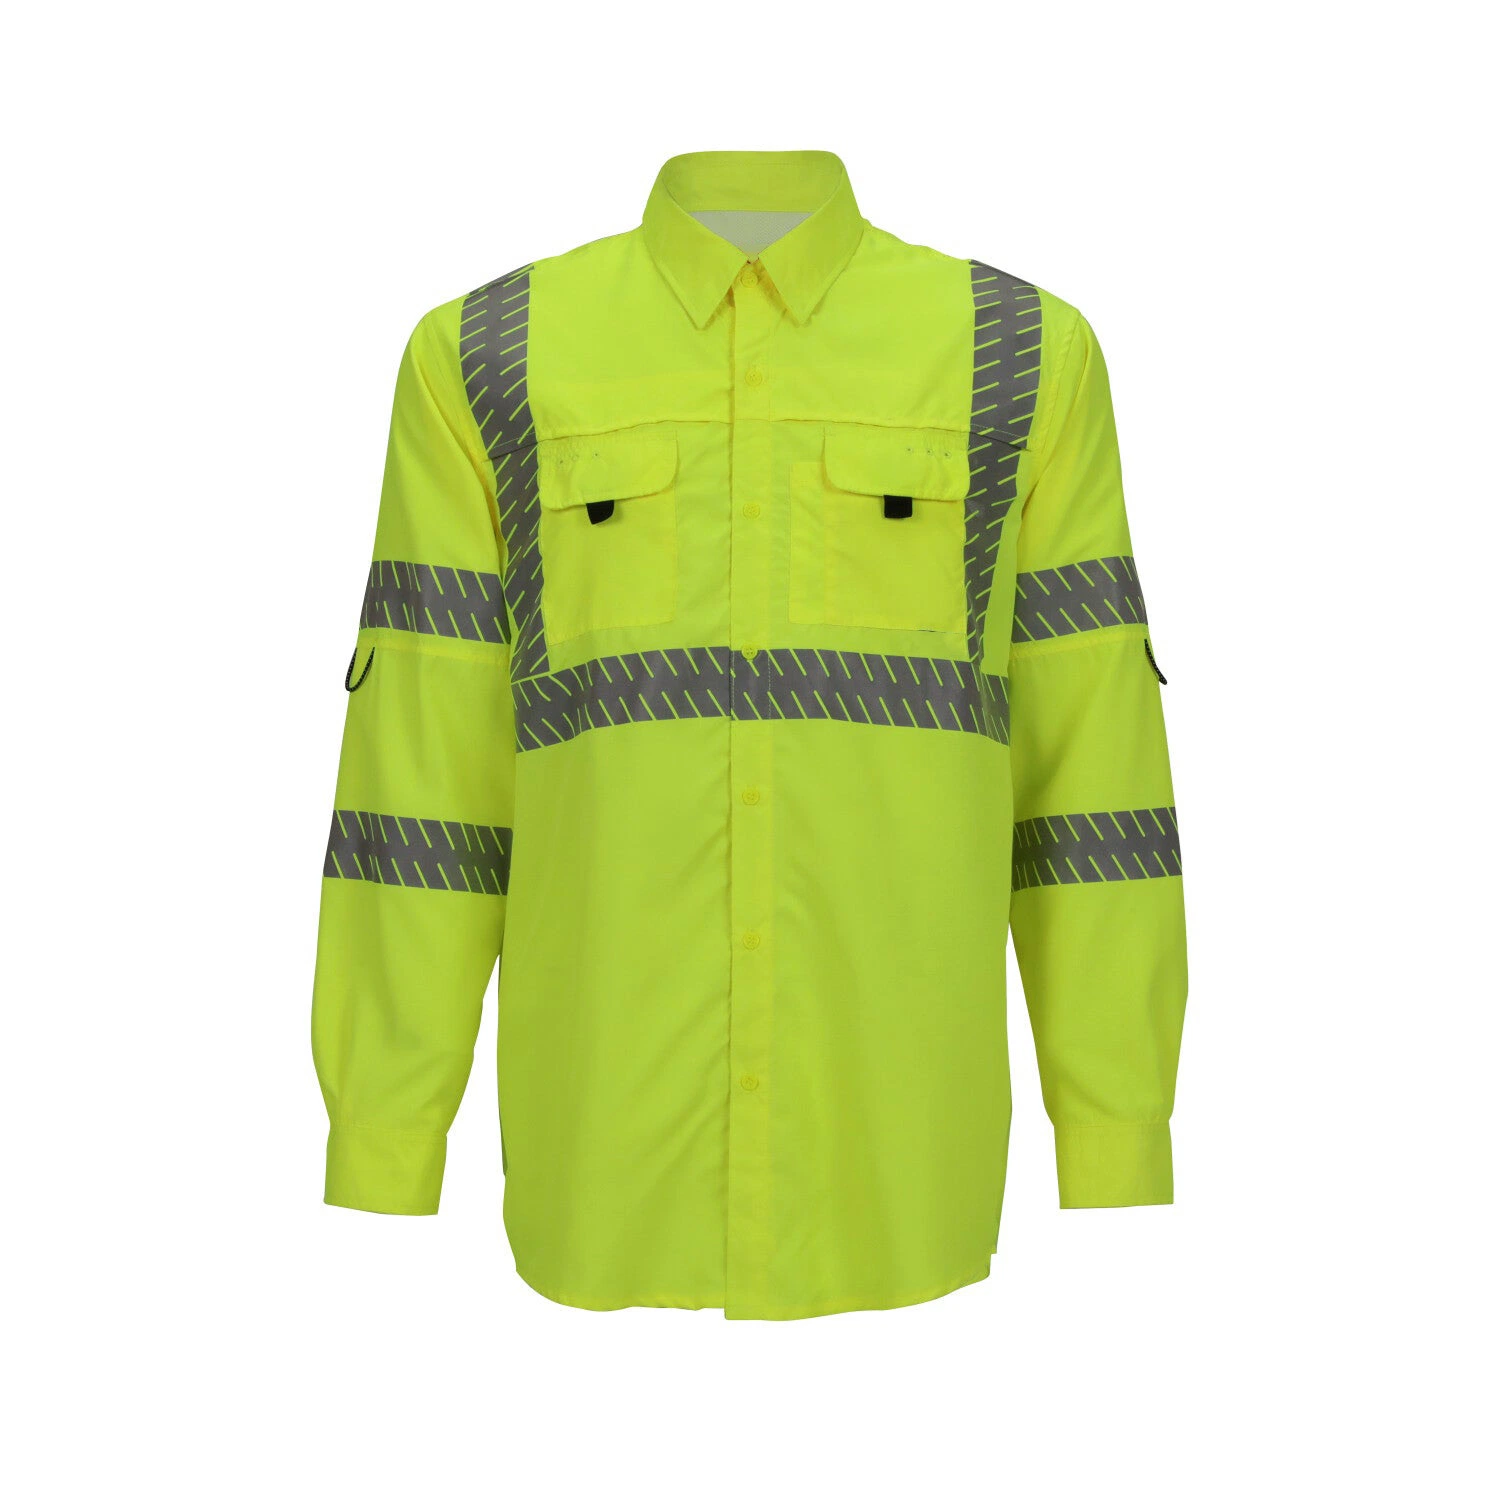 Fashion Custom Men Reflective Shirt Safety Workwear Safety Shirt